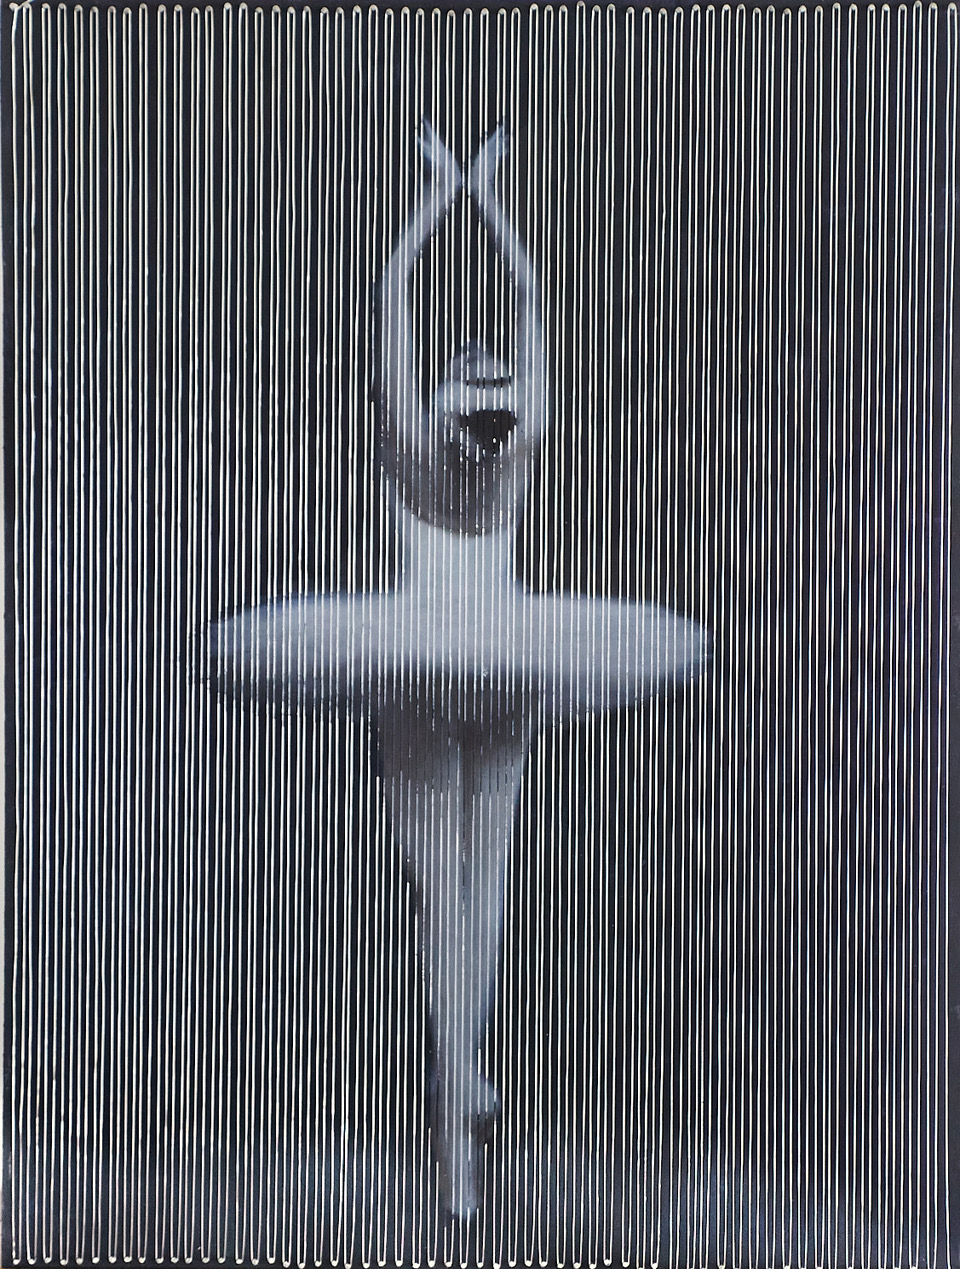 Bailarina III